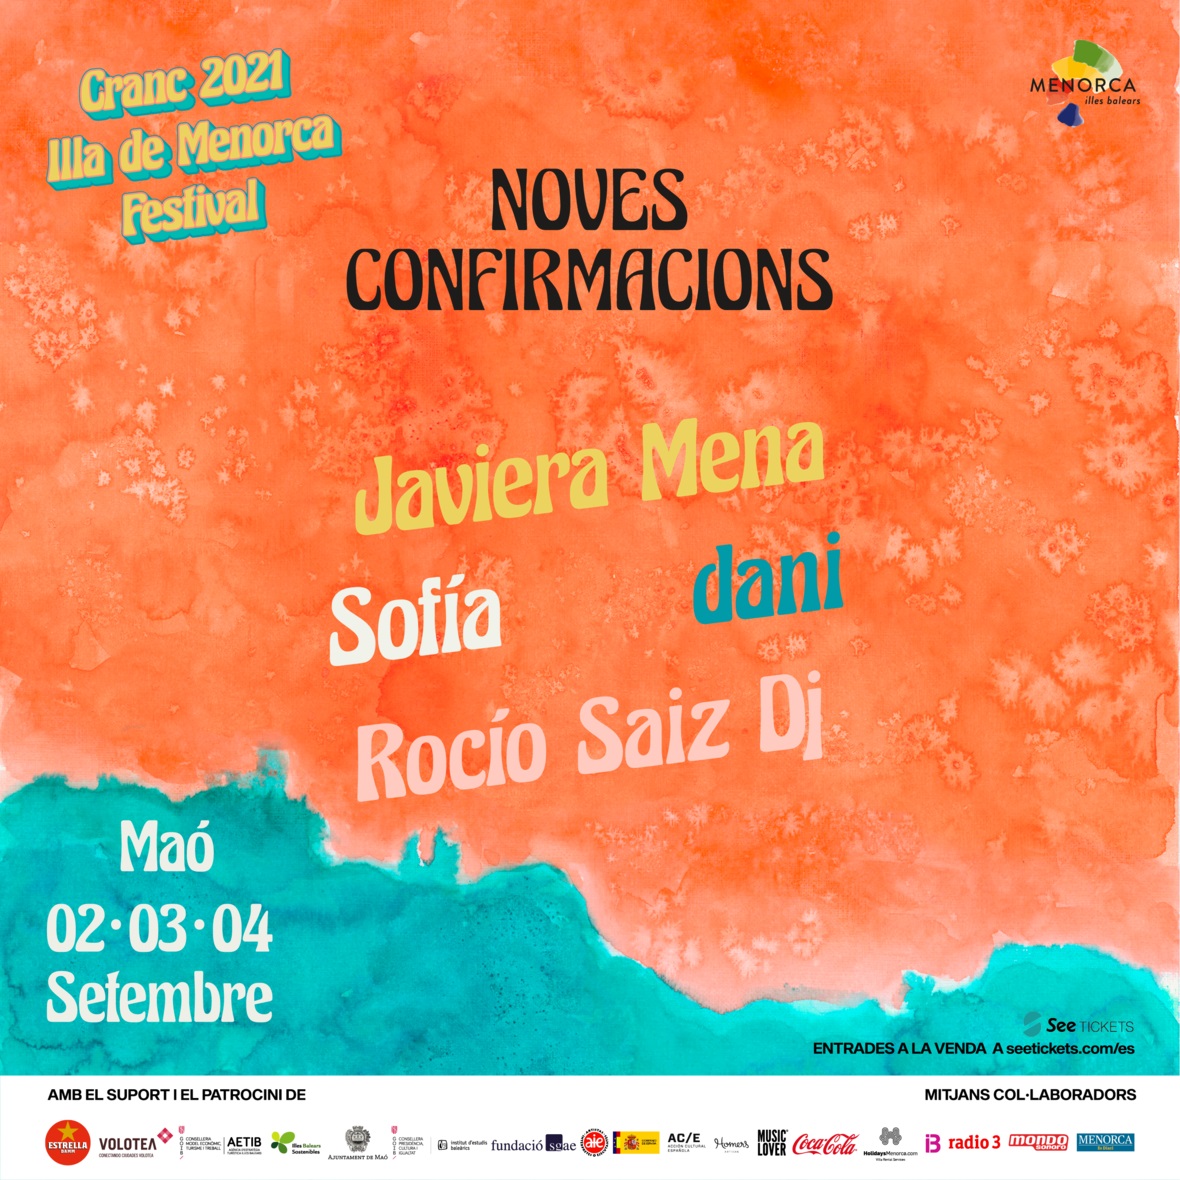 CRANC Illa de Menorca Festival 2021 programa una noche inaugural totalmente femenina